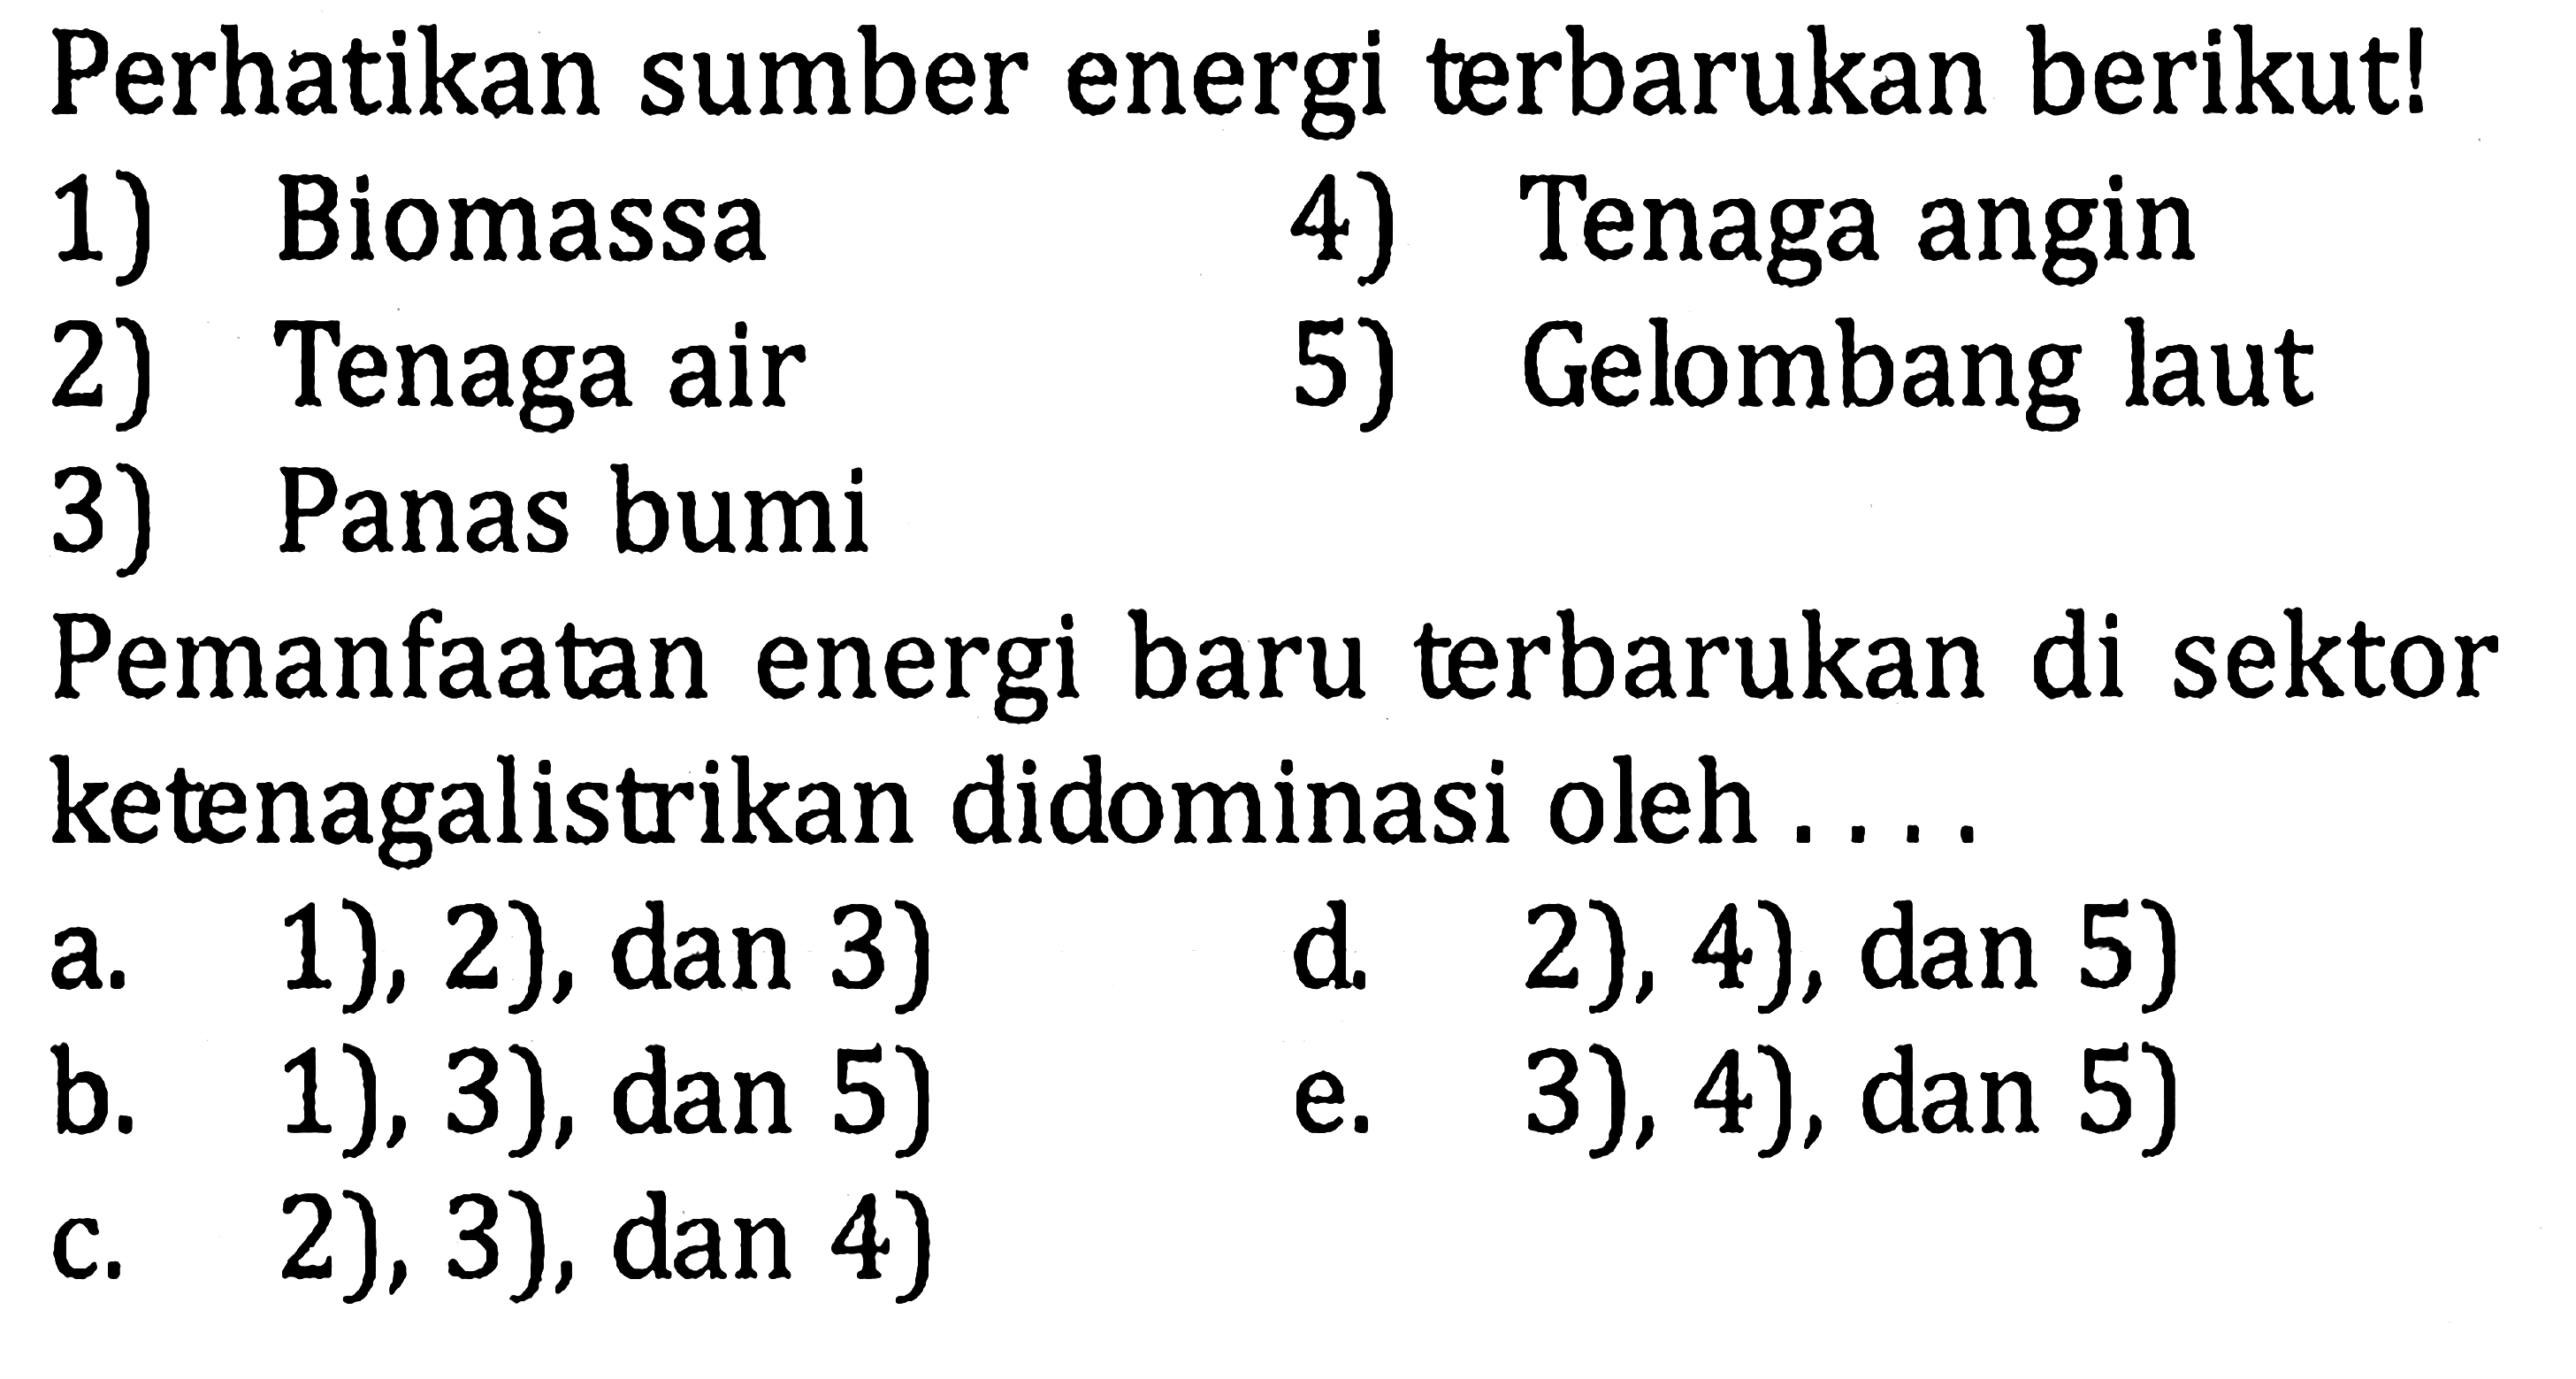 Perhatikan sumber energi terbarukan berikut!1) Biomassa4) Tenaga angin2) Tenaga air5) Gelombang laut3) Panas bumiPemanfaatan energi baru terbarukan di sektor ketenagalistrikan didominasi oleh ... a. 1), 2), dan 3) d. 2), 4), dan 5) b. 1), 3), dan 5) e. 3), 4), dan 5) c. 2), 3), dan 4)